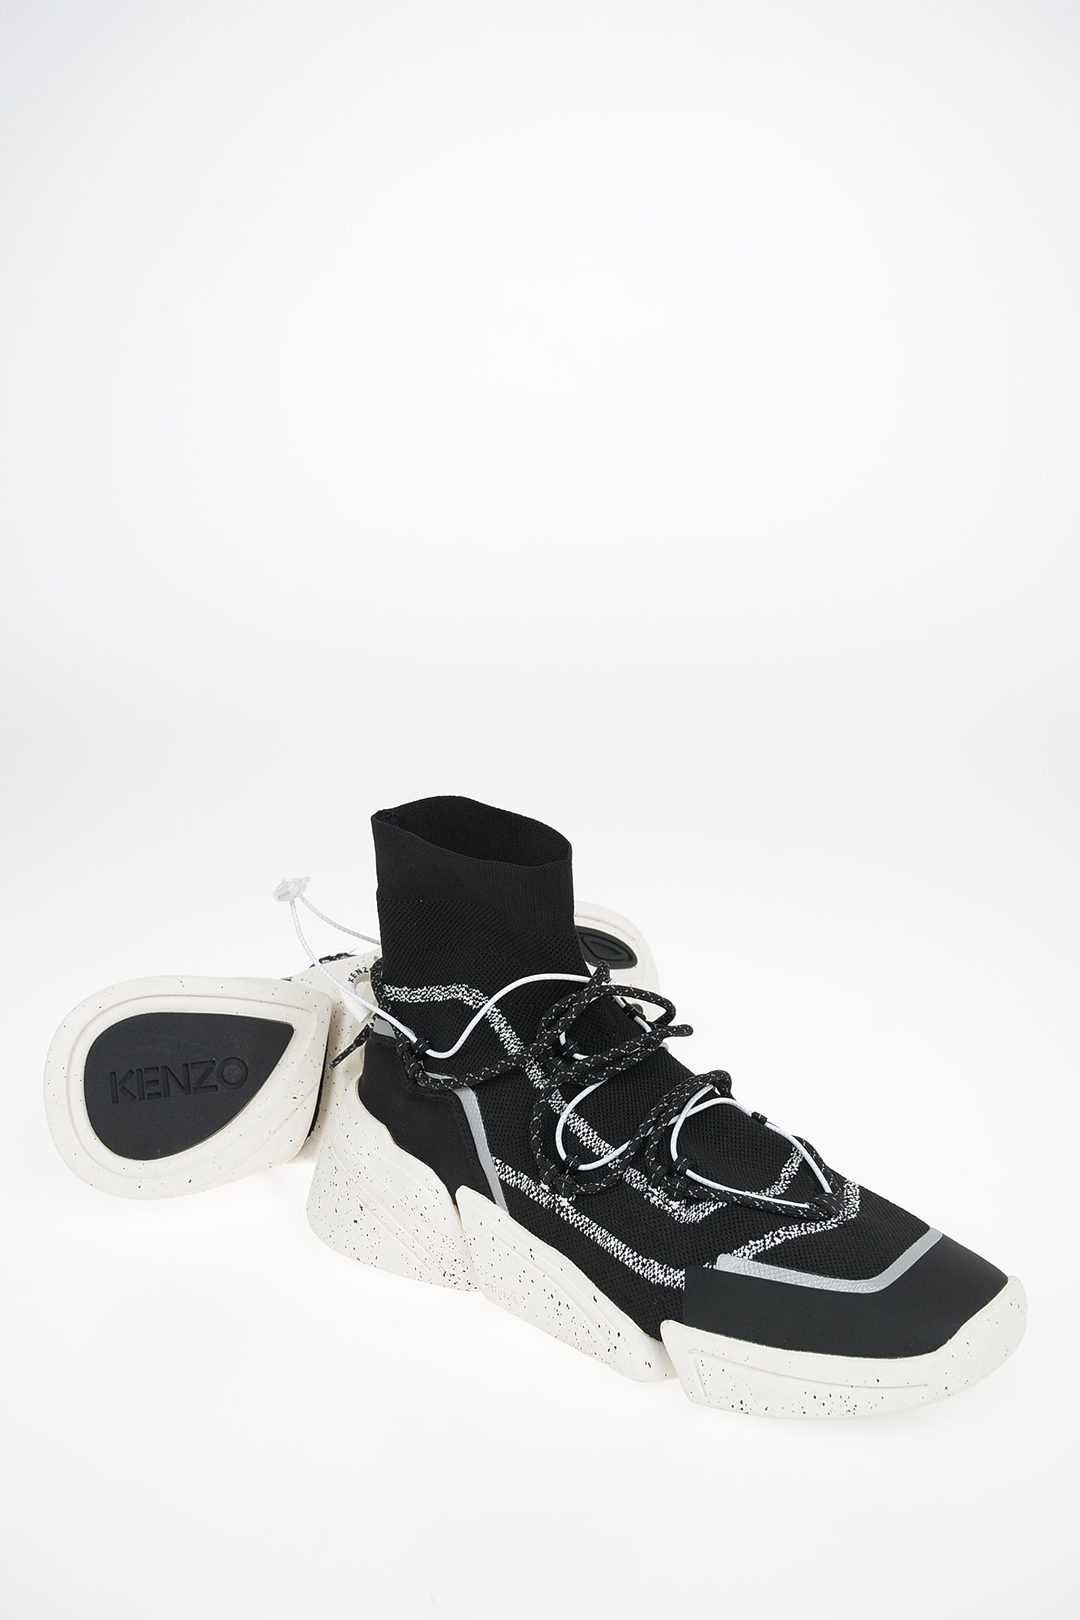 Men's White Kenzo Shoes / Footwear: 39 Items in Stock | Stylight